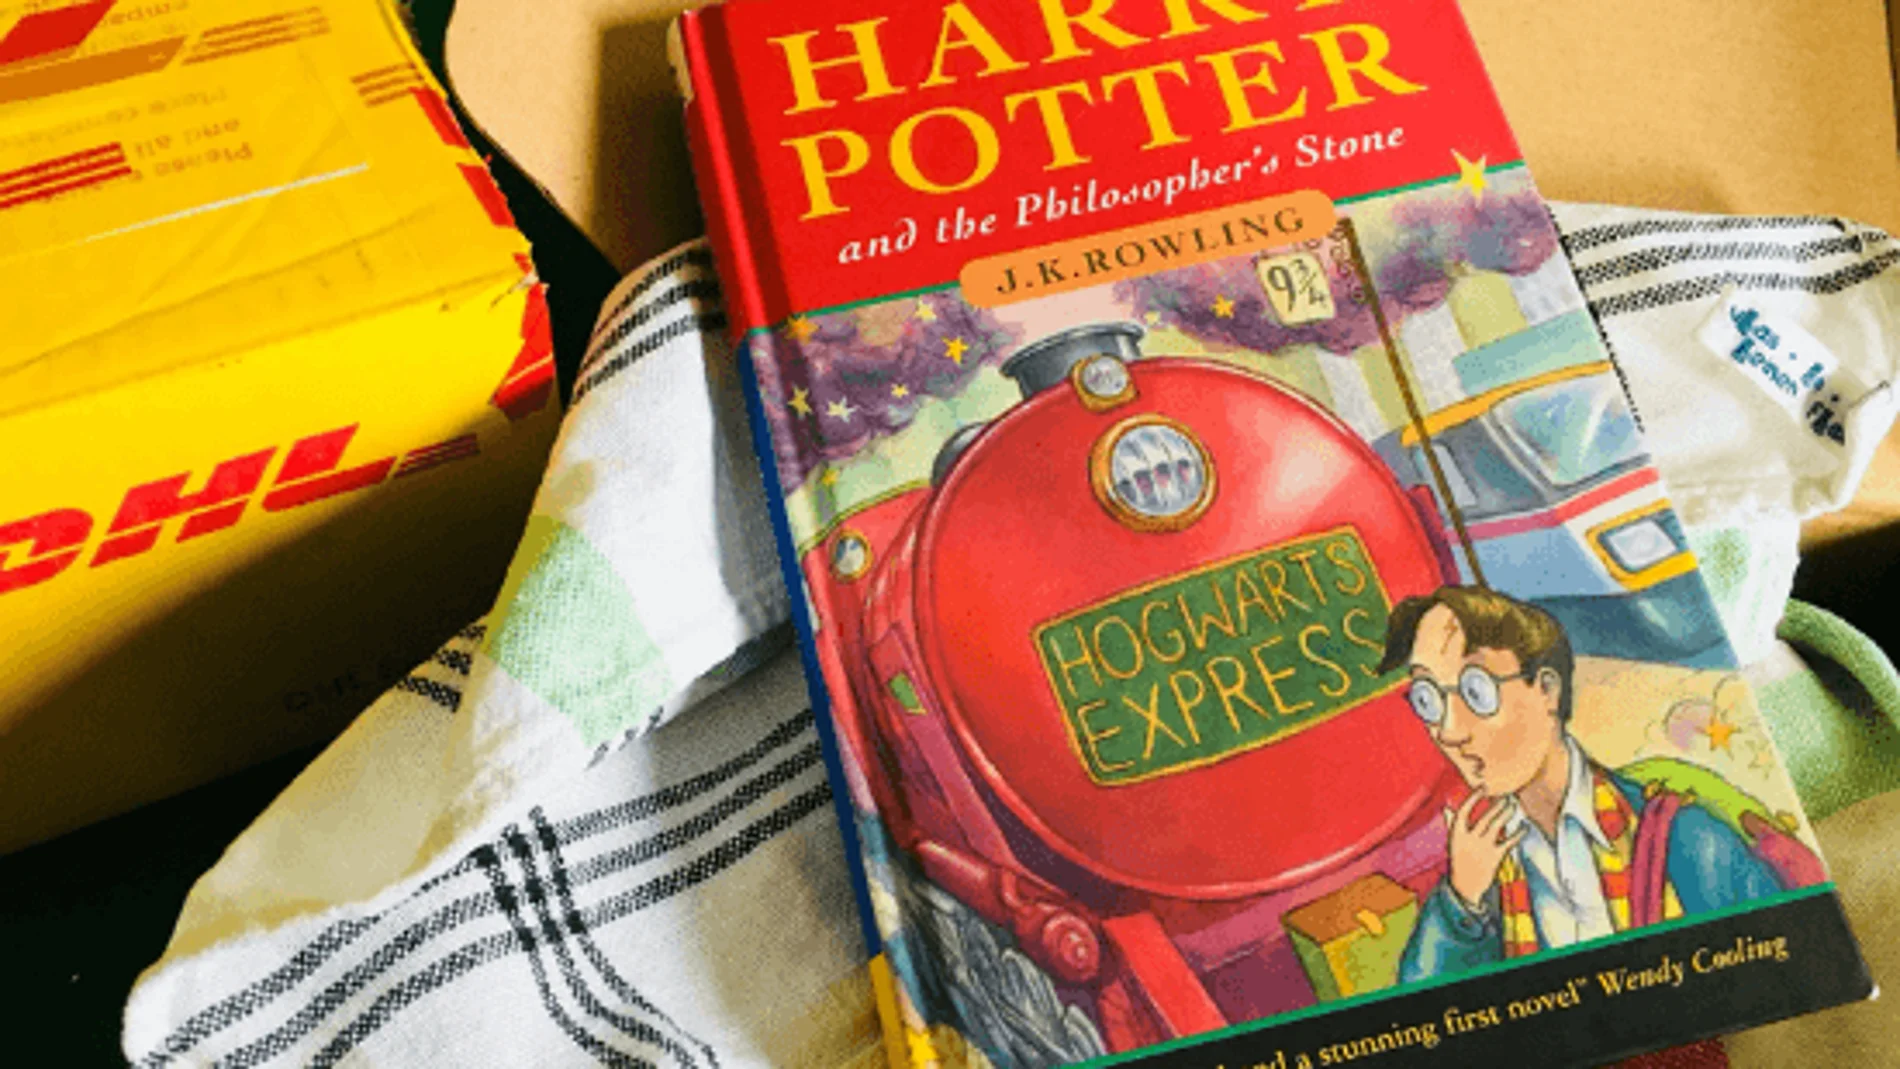 El libro de Harry Potter encontrado en la casa de un profesor jubilado